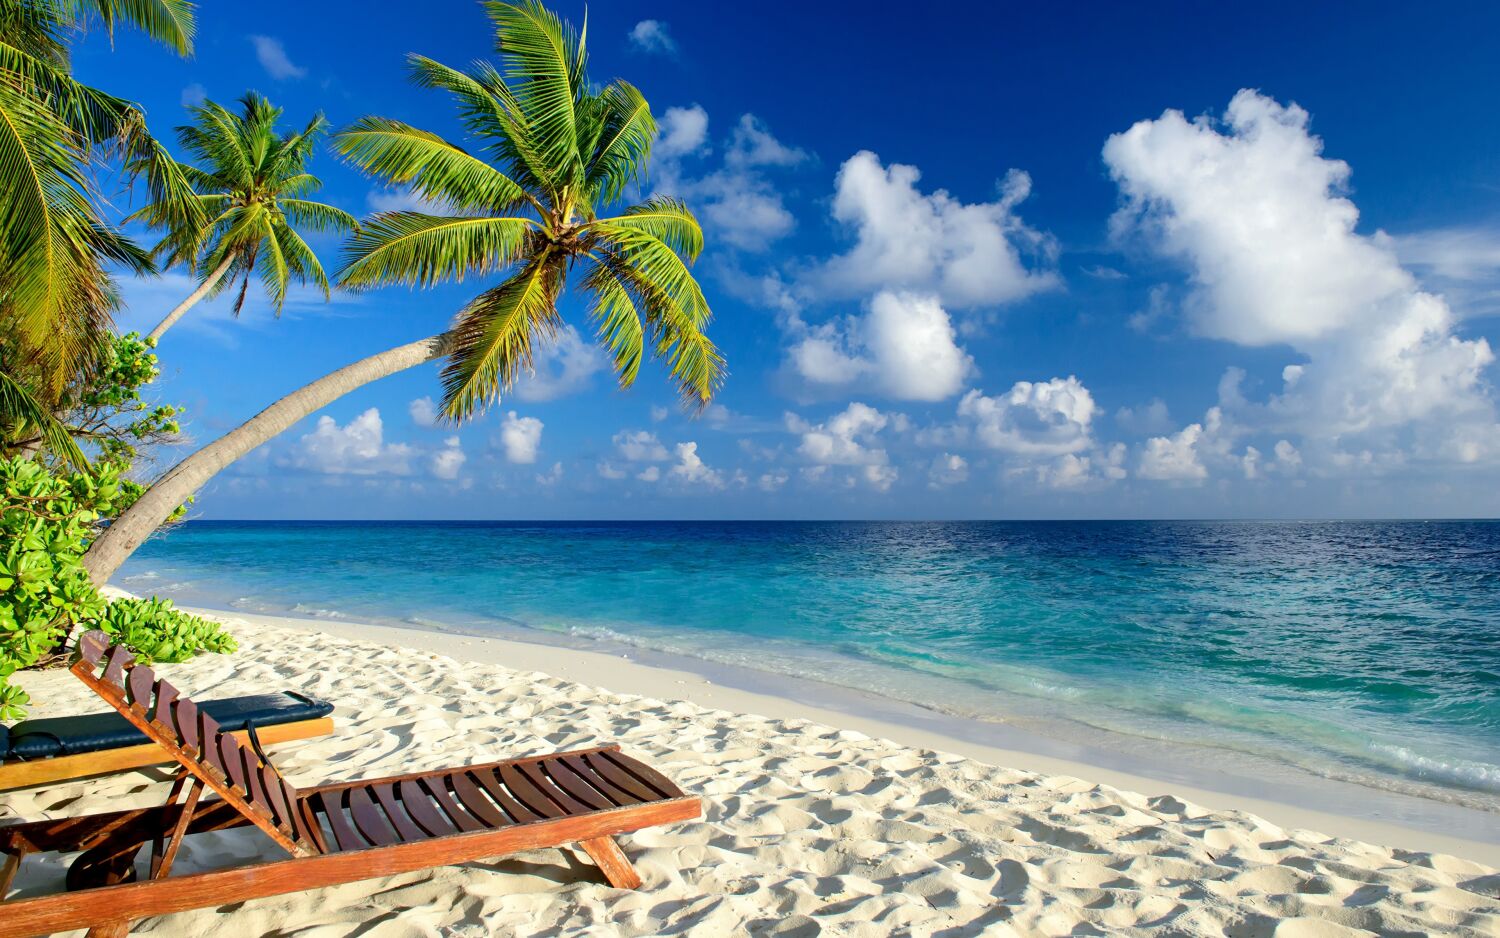 Пазл море и чистый пляж - разгадать онлайн из раздела Пейзажи бесплатно